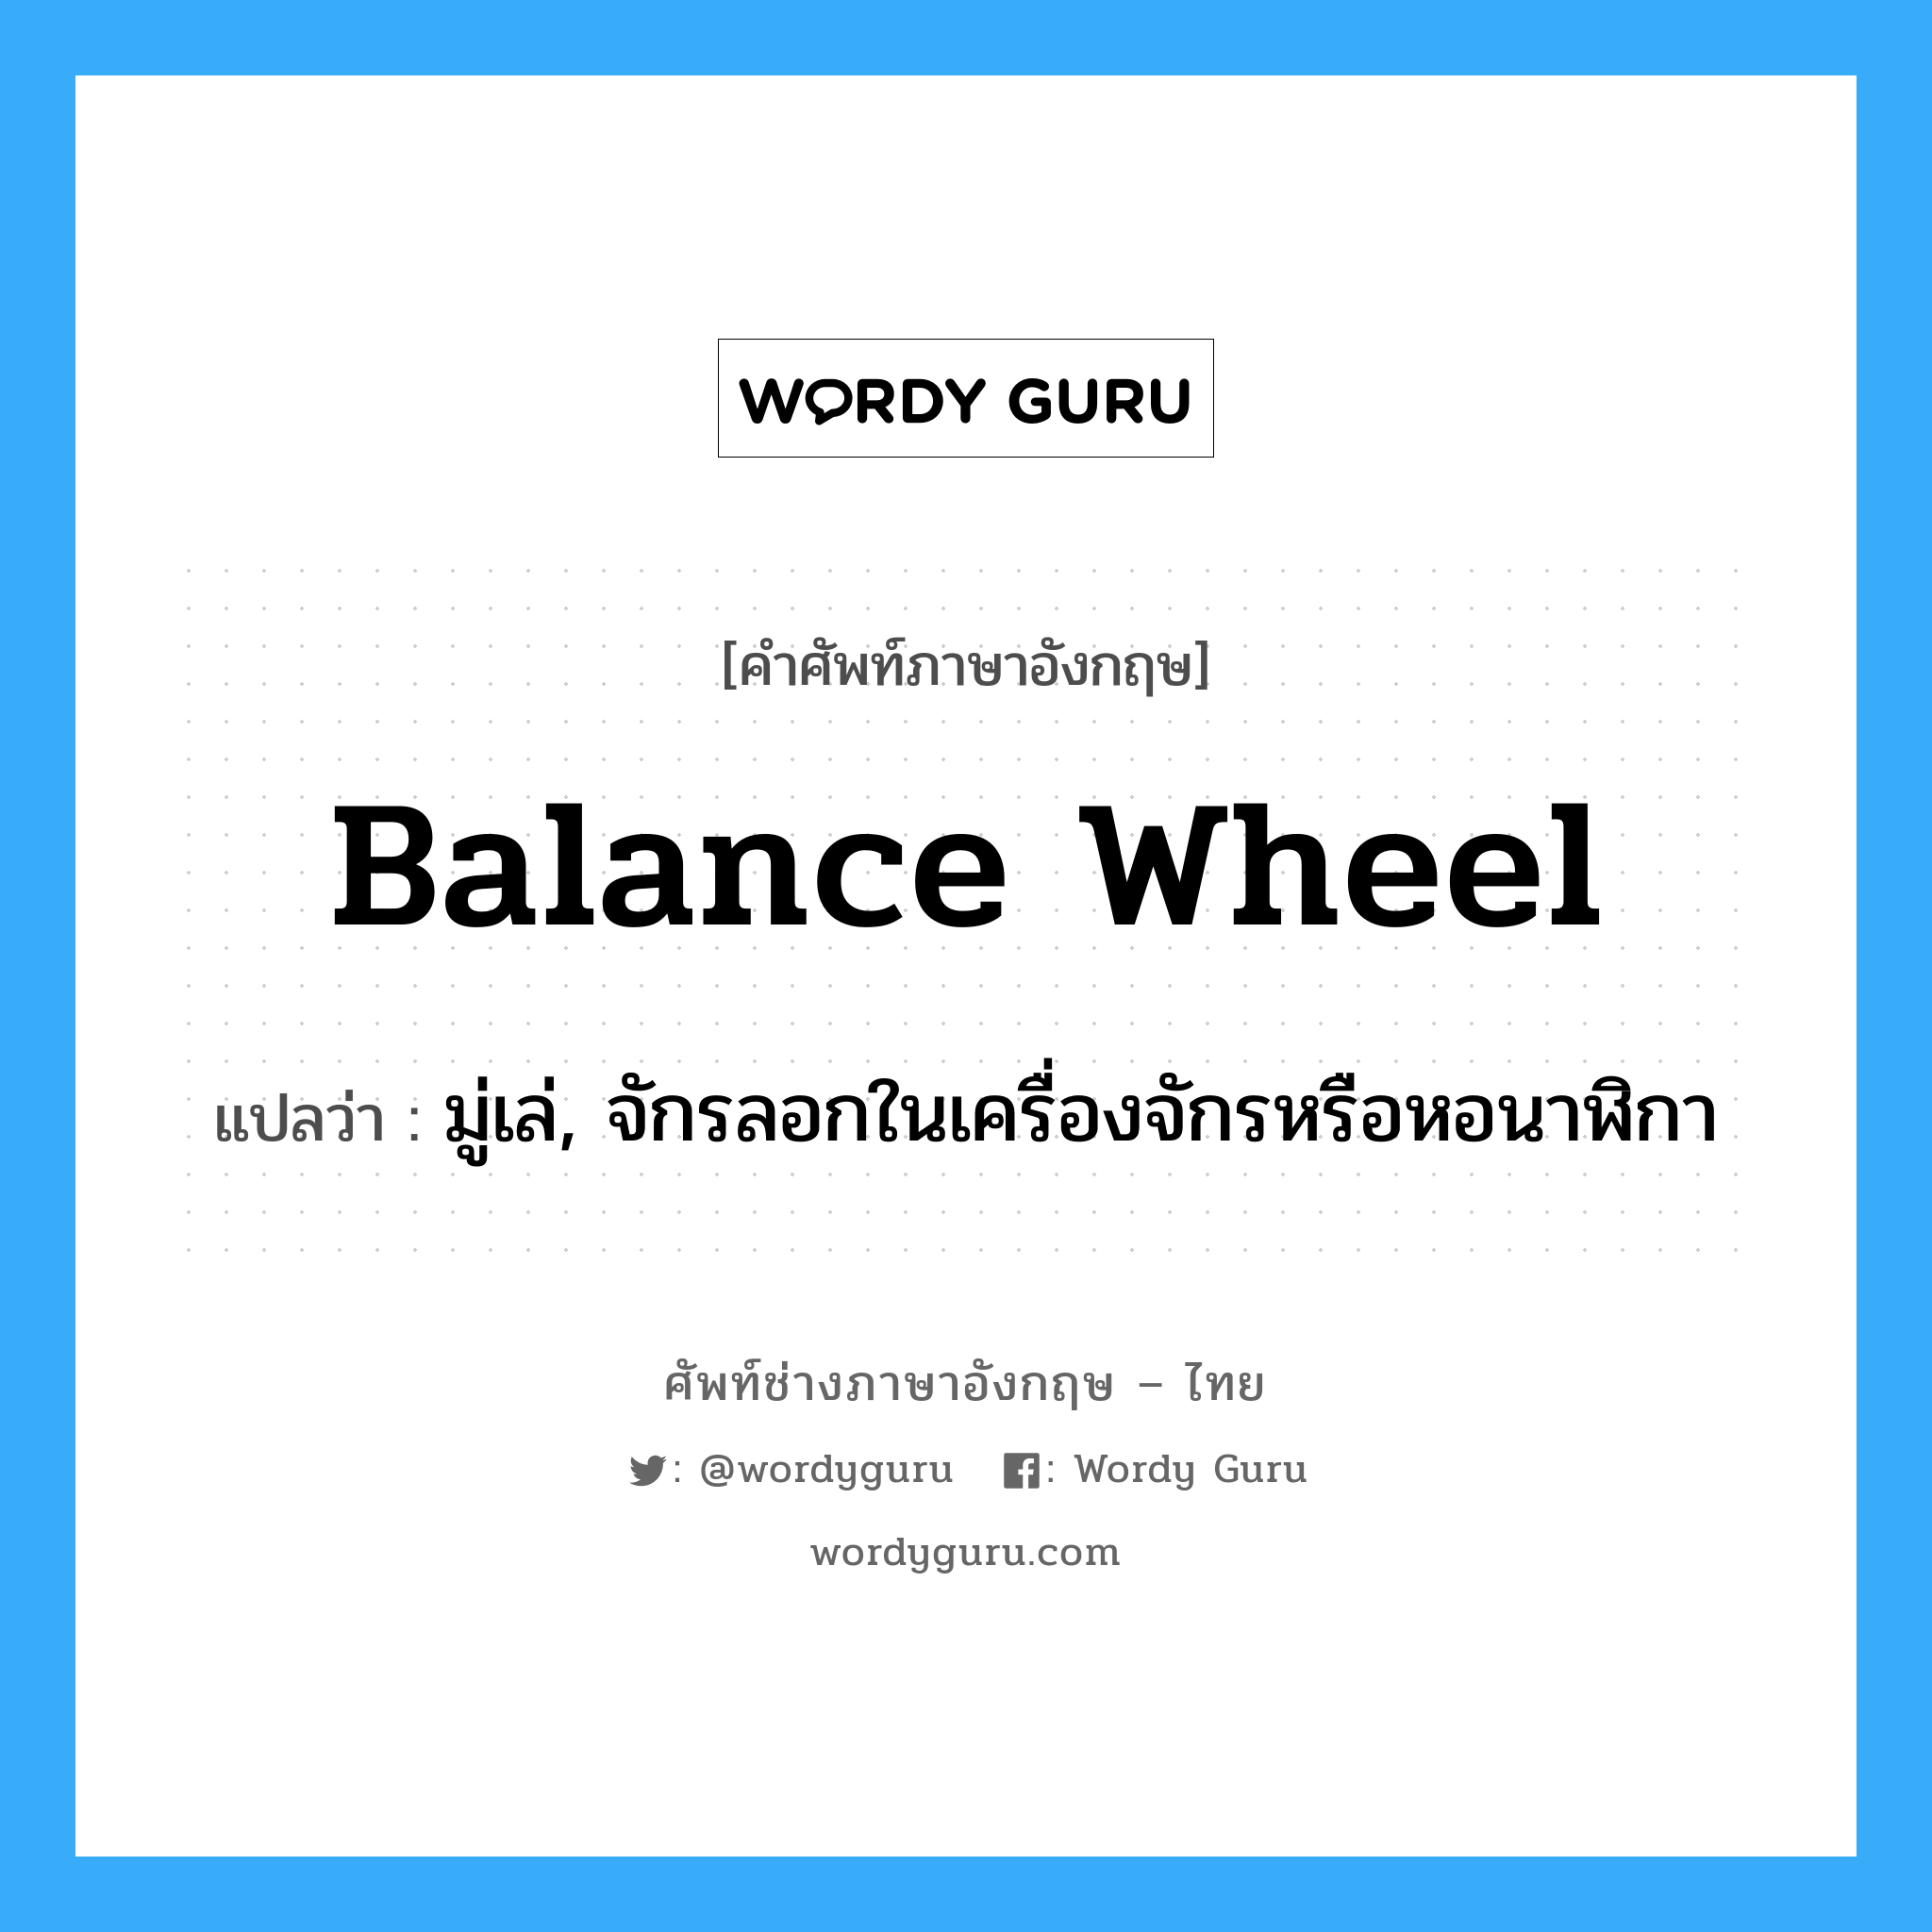 balance wheel แปลว่า?, คำศัพท์ช่างภาษาอังกฤษ - ไทย balance wheel คำศัพท์ภาษาอังกฤษ balance wheel แปลว่า มู่เล่, จักรลอกในเครื่องจักรหรือหอนาฬิกา